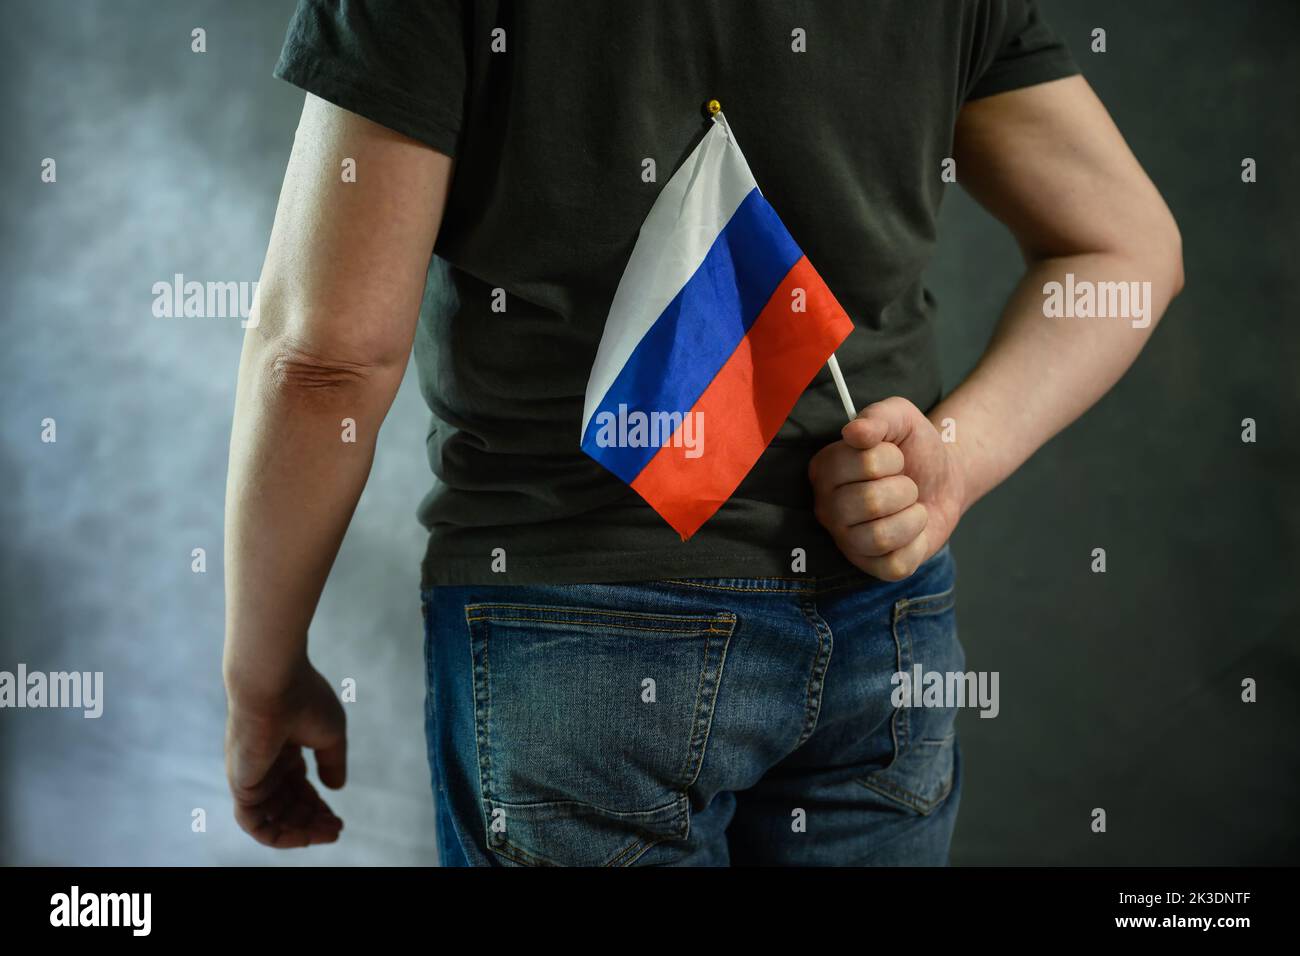 Homme cachant le drapeau russe derrière son dos, personne qui aime la Russie sur fond gris. Concept de Russophobia, peur, guerre d'Ukraine, haine, protestation, vérité, Banque D'Images